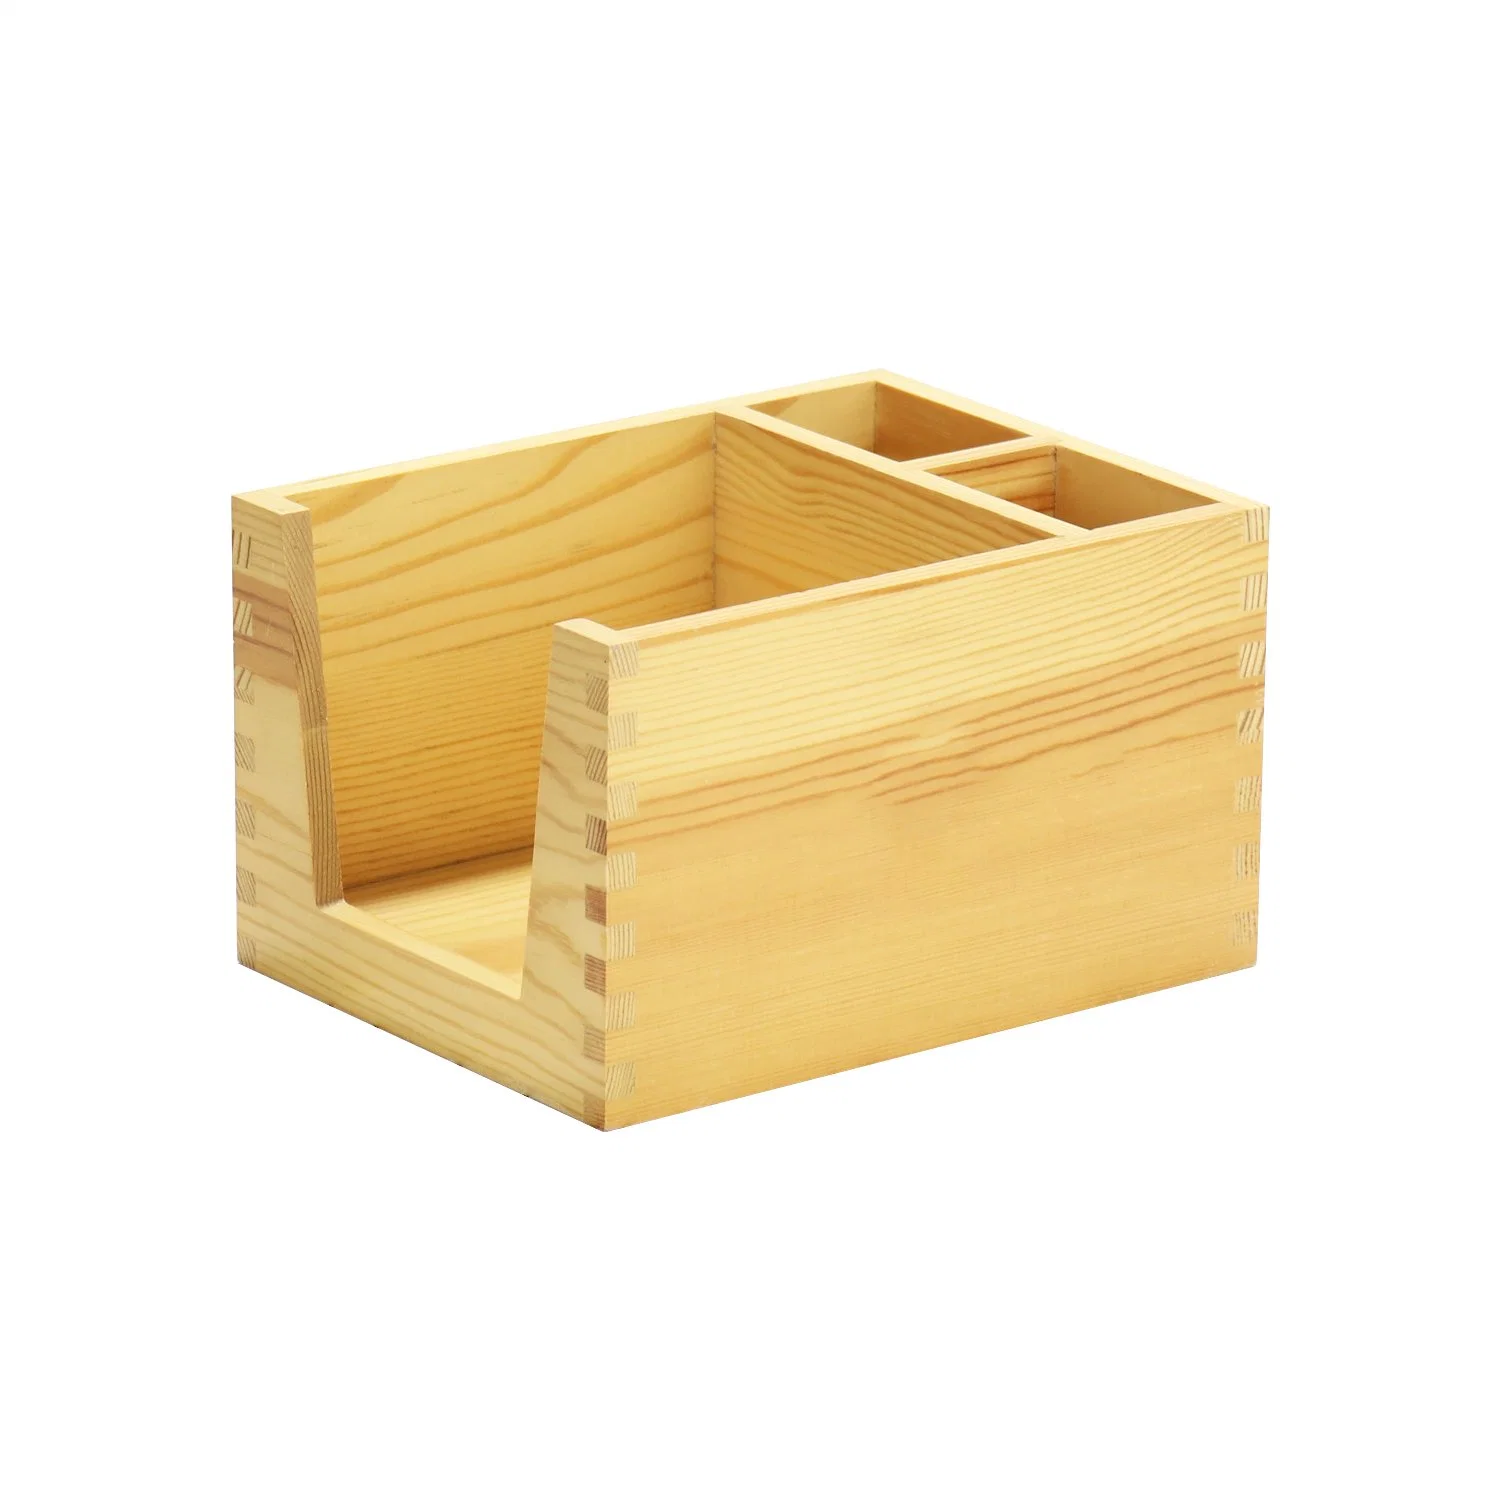 Le bois carré boîte de l'Organiseur de stockage pour les bateaux Boîte en bois d'accueil,